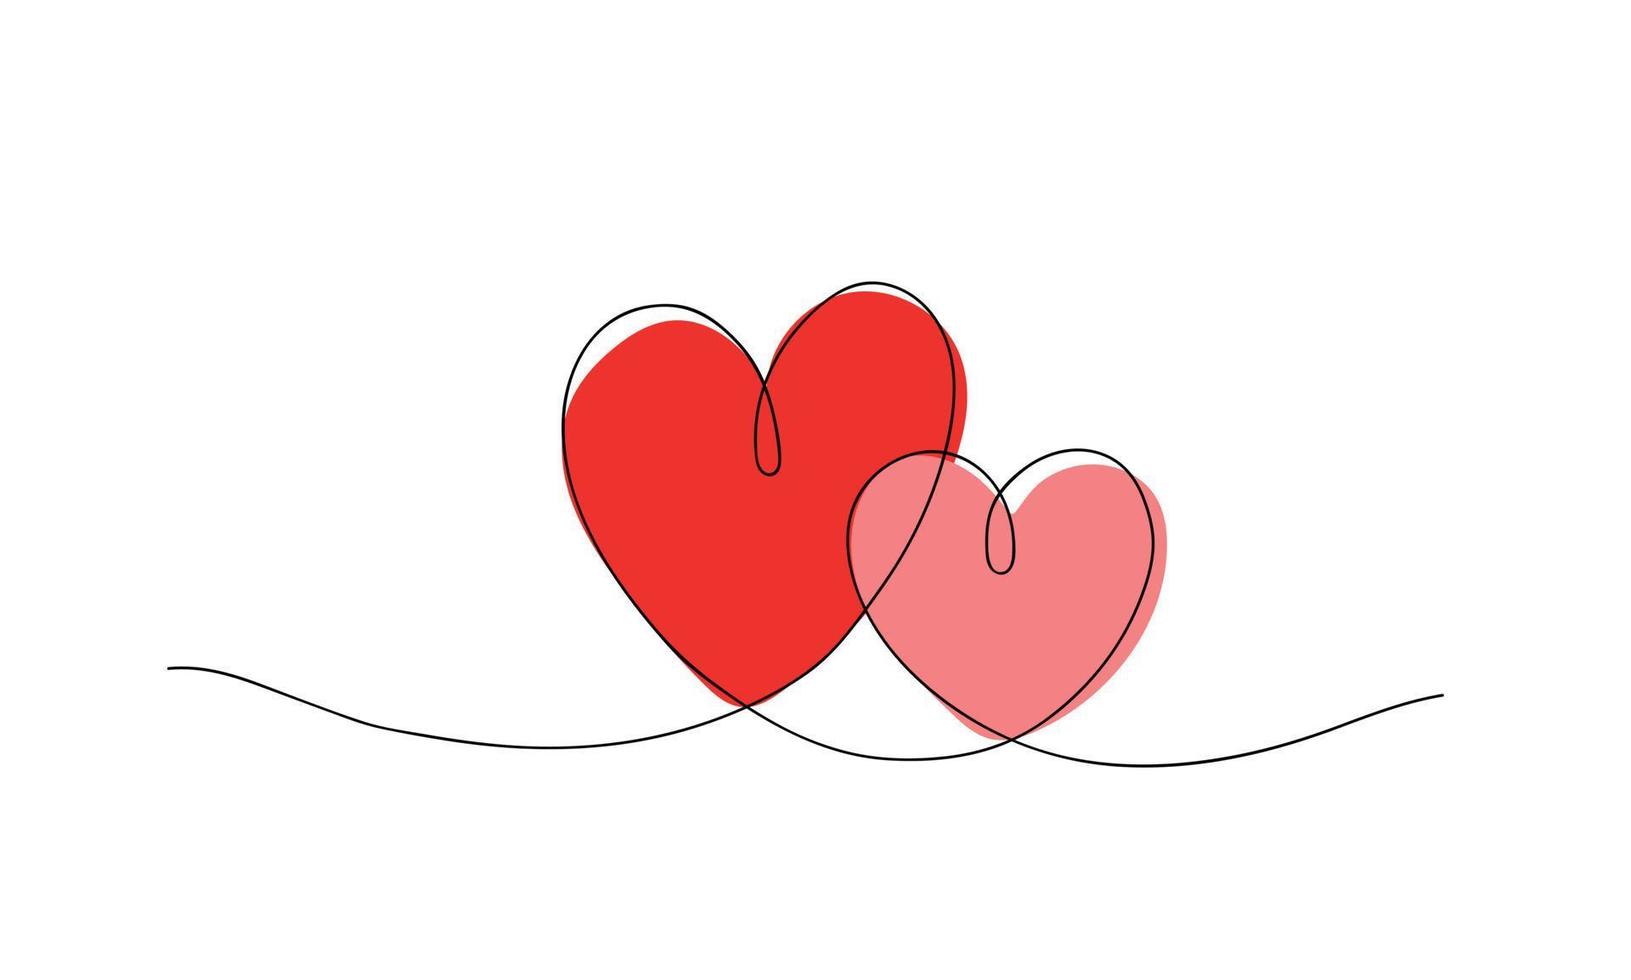 zwei rote herzen, eine strichzeichnung, umriss. postkarte für liebhaber, valentinstag vektor